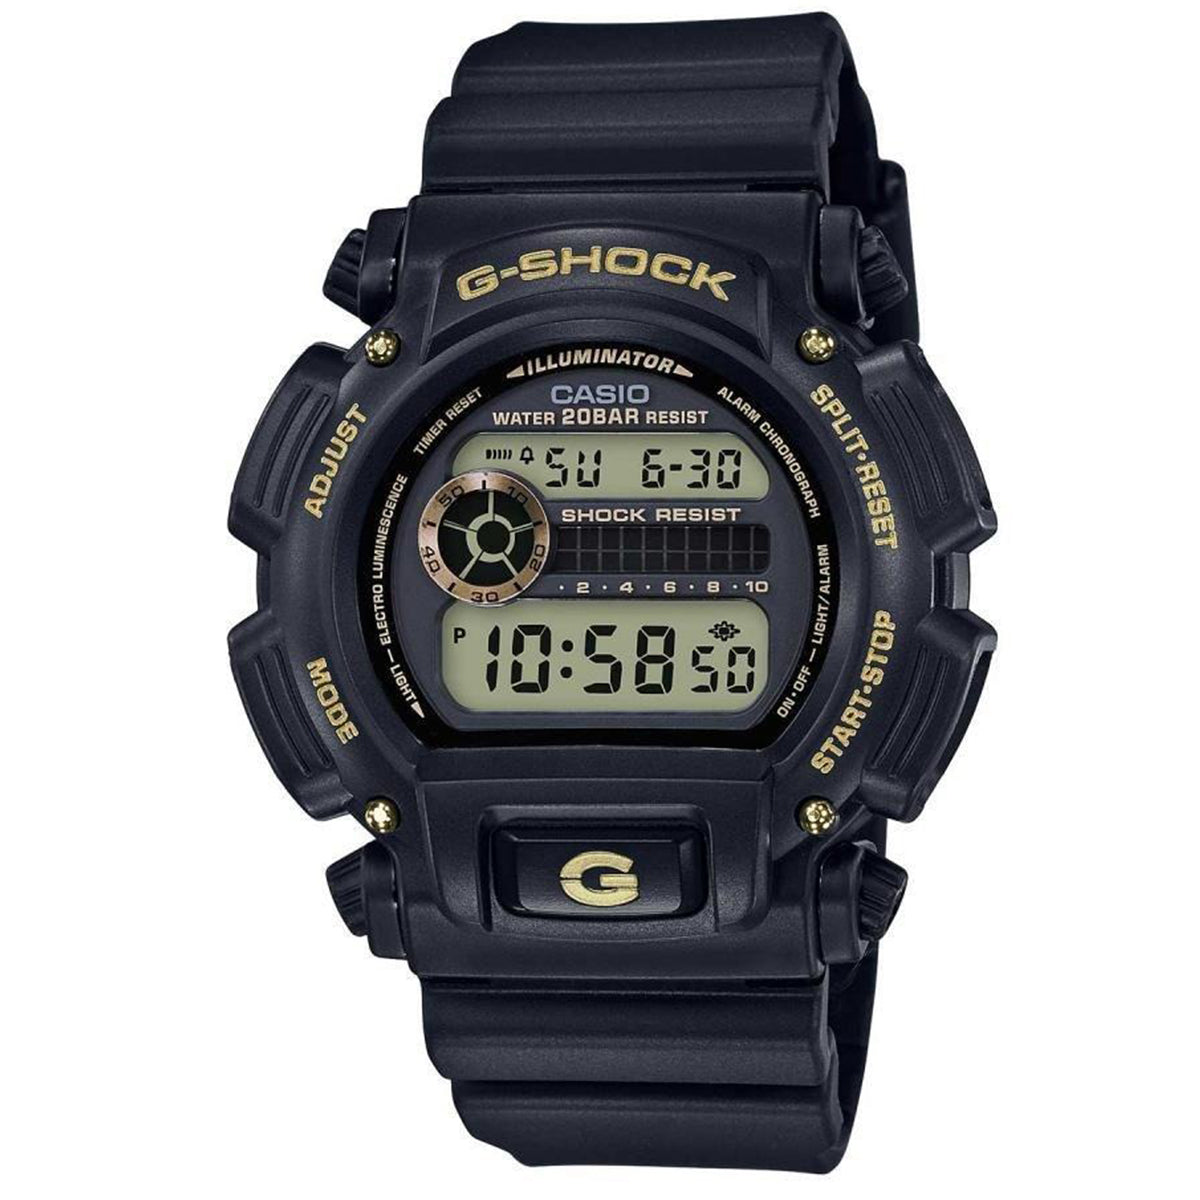 Casio - G-Shock - DW-9052GBX-1A9DR